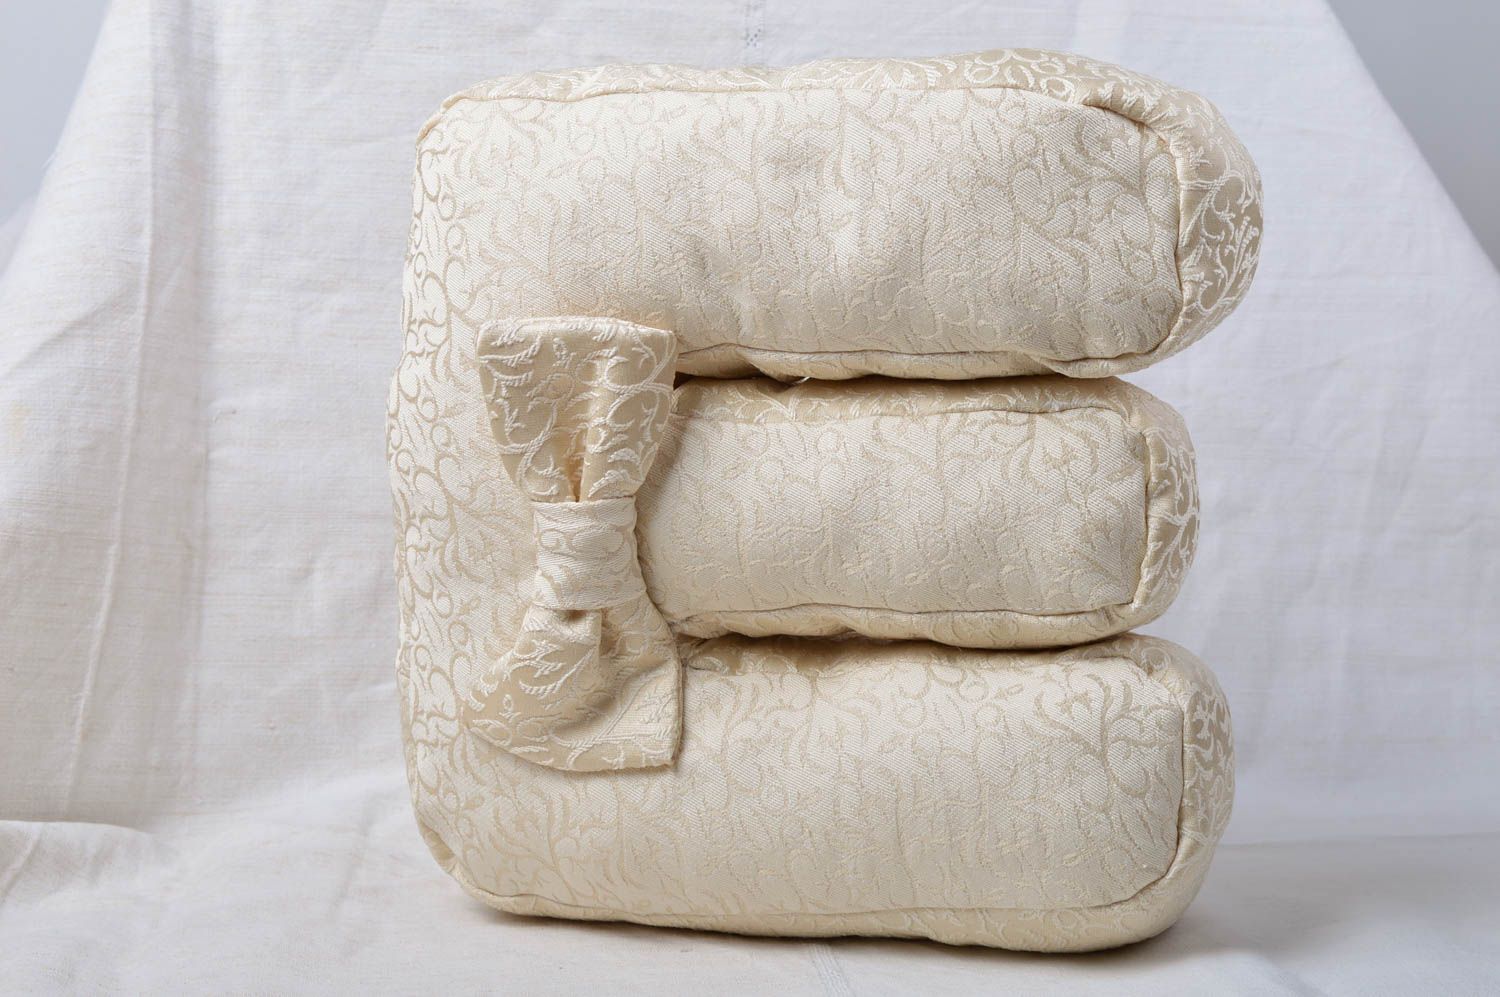 Декоративная подушка ручной работы подушка-буква из жаккарда мягкая буква Ш фото 1